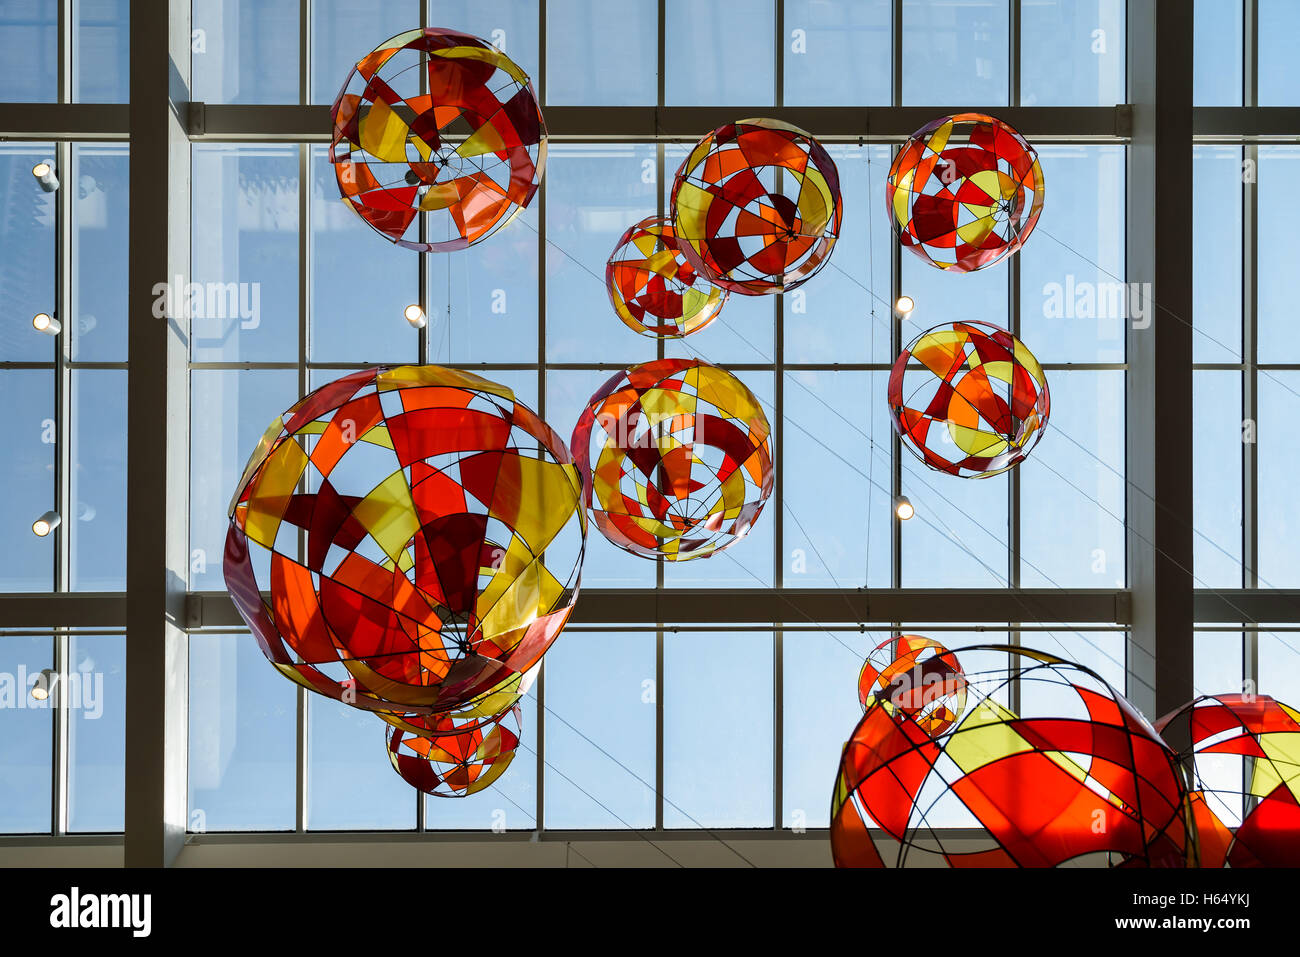 Farbglas Ballons an Decke Stockfoto